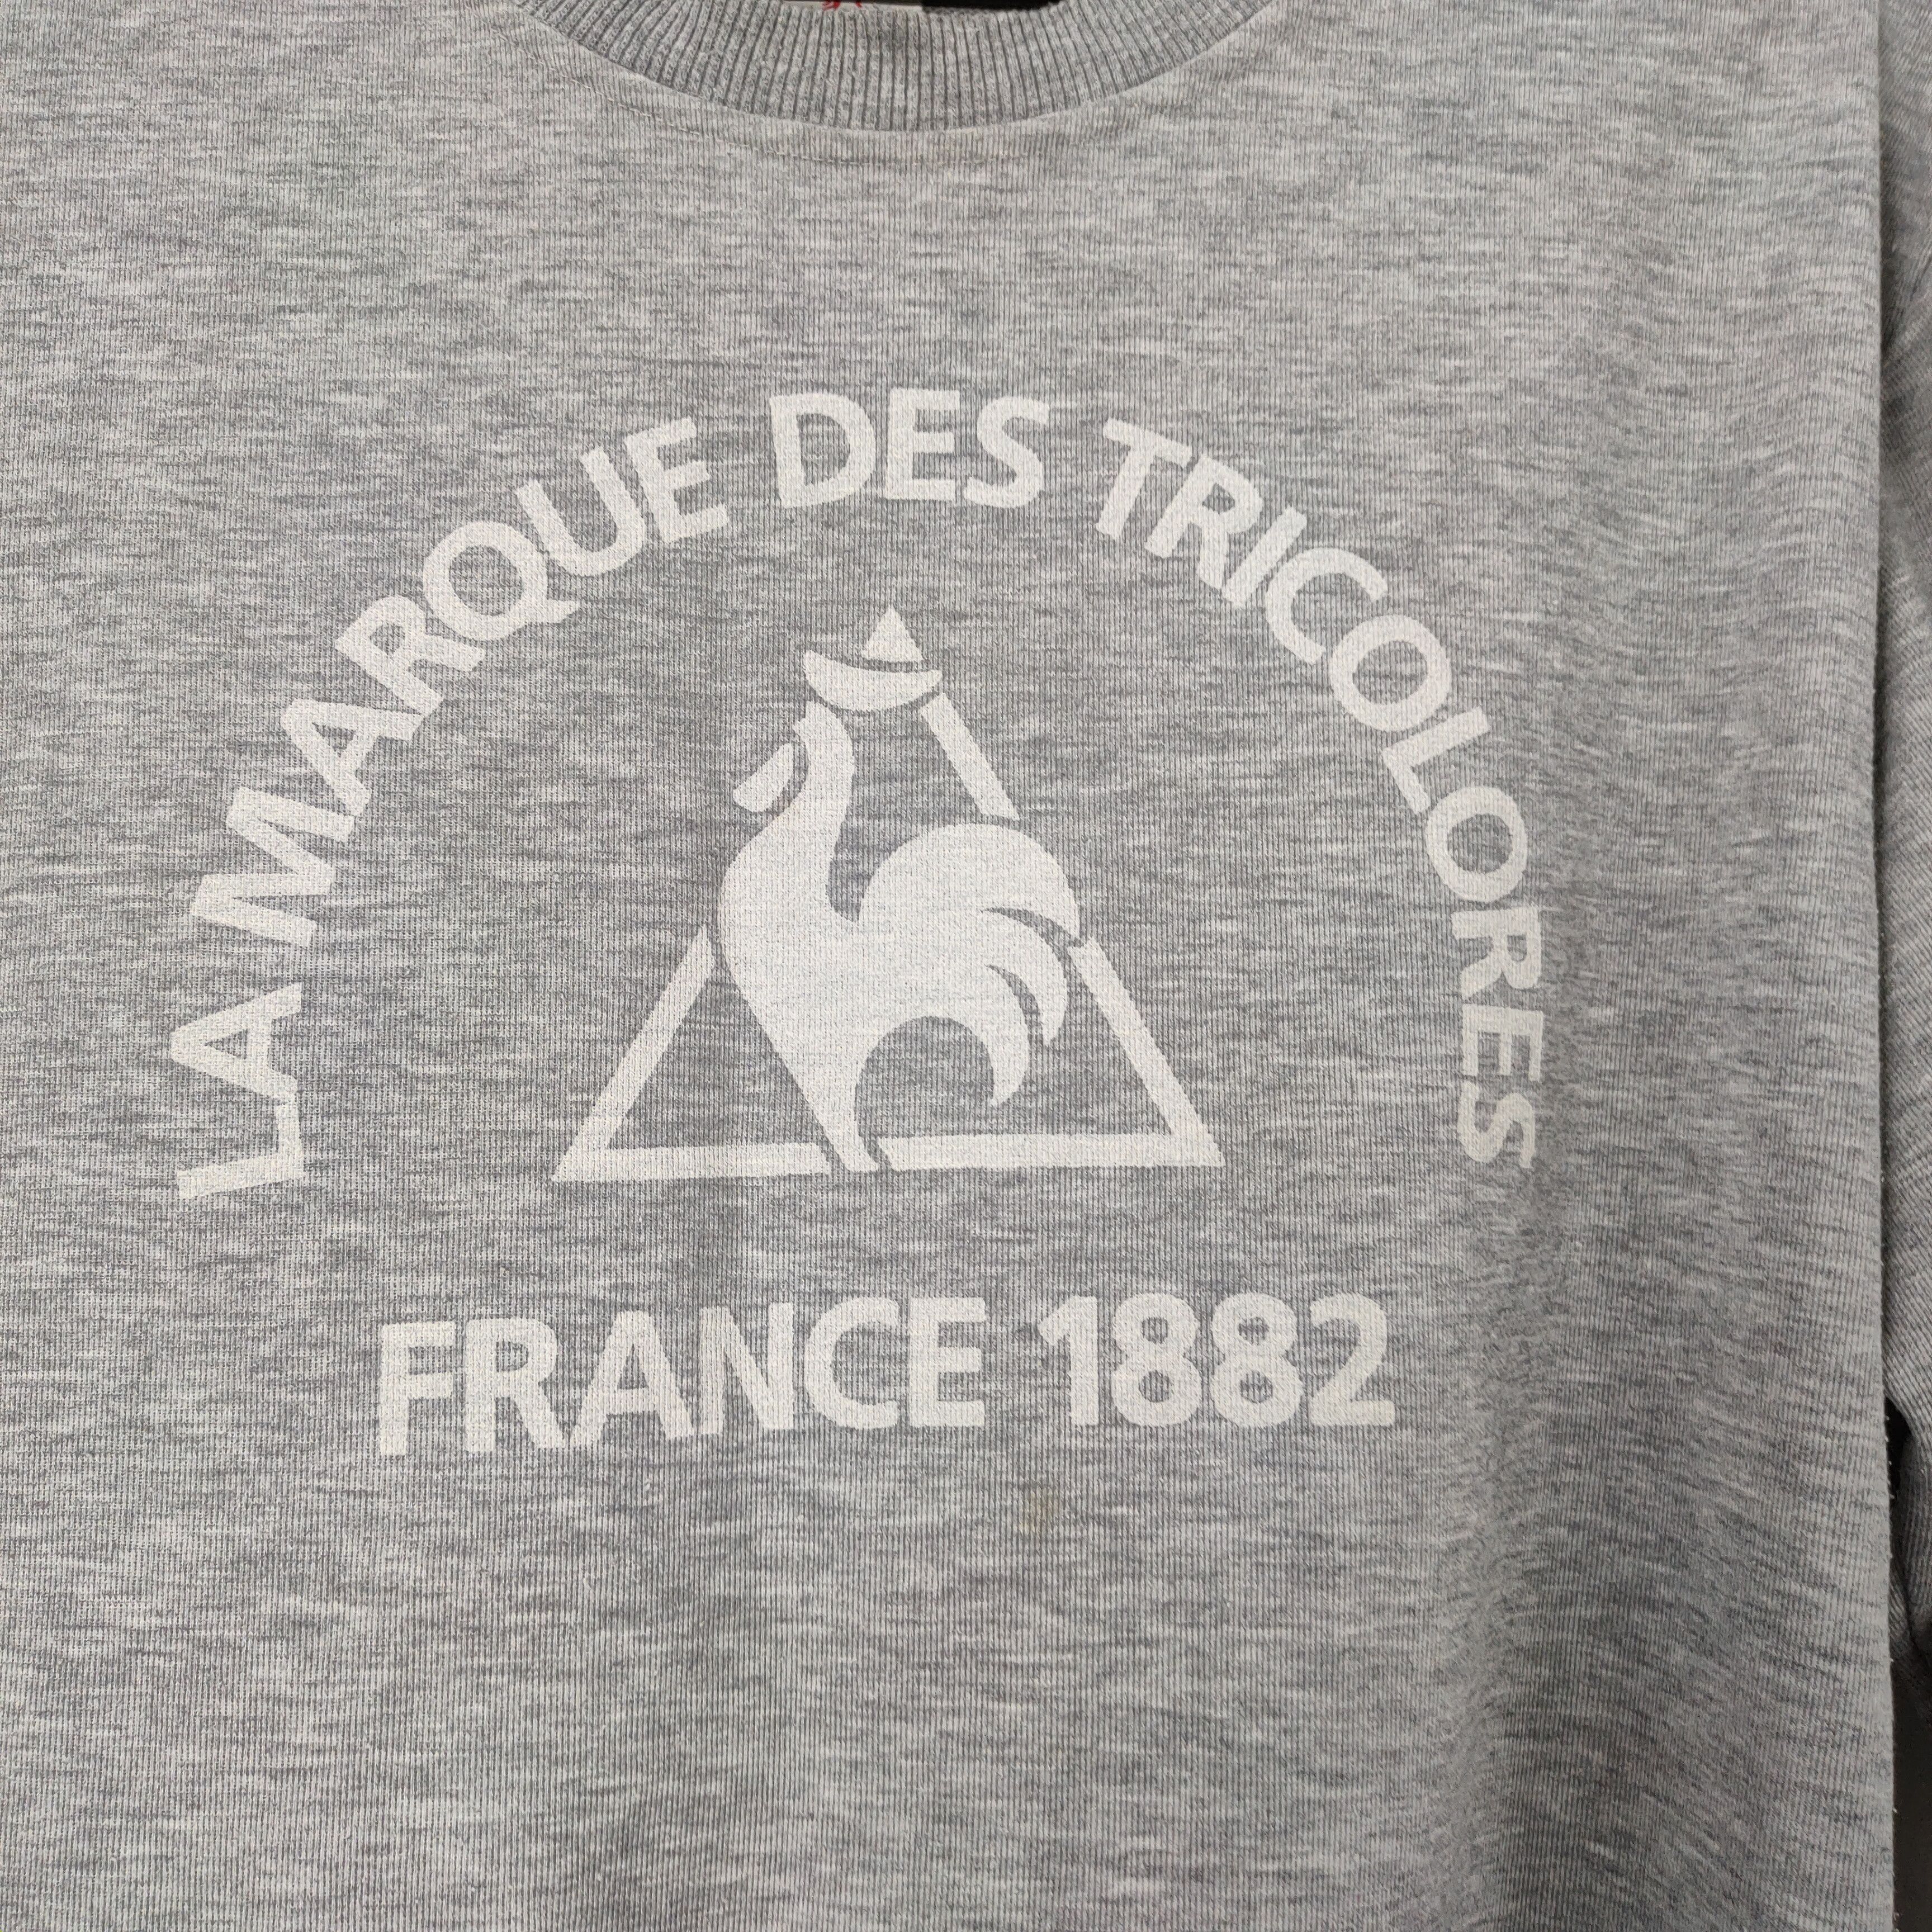 Vintage Le Coq Sportif Big Logo Sweatshirt Size US L / EU 52-54 / 3 - 3 Thumbnail